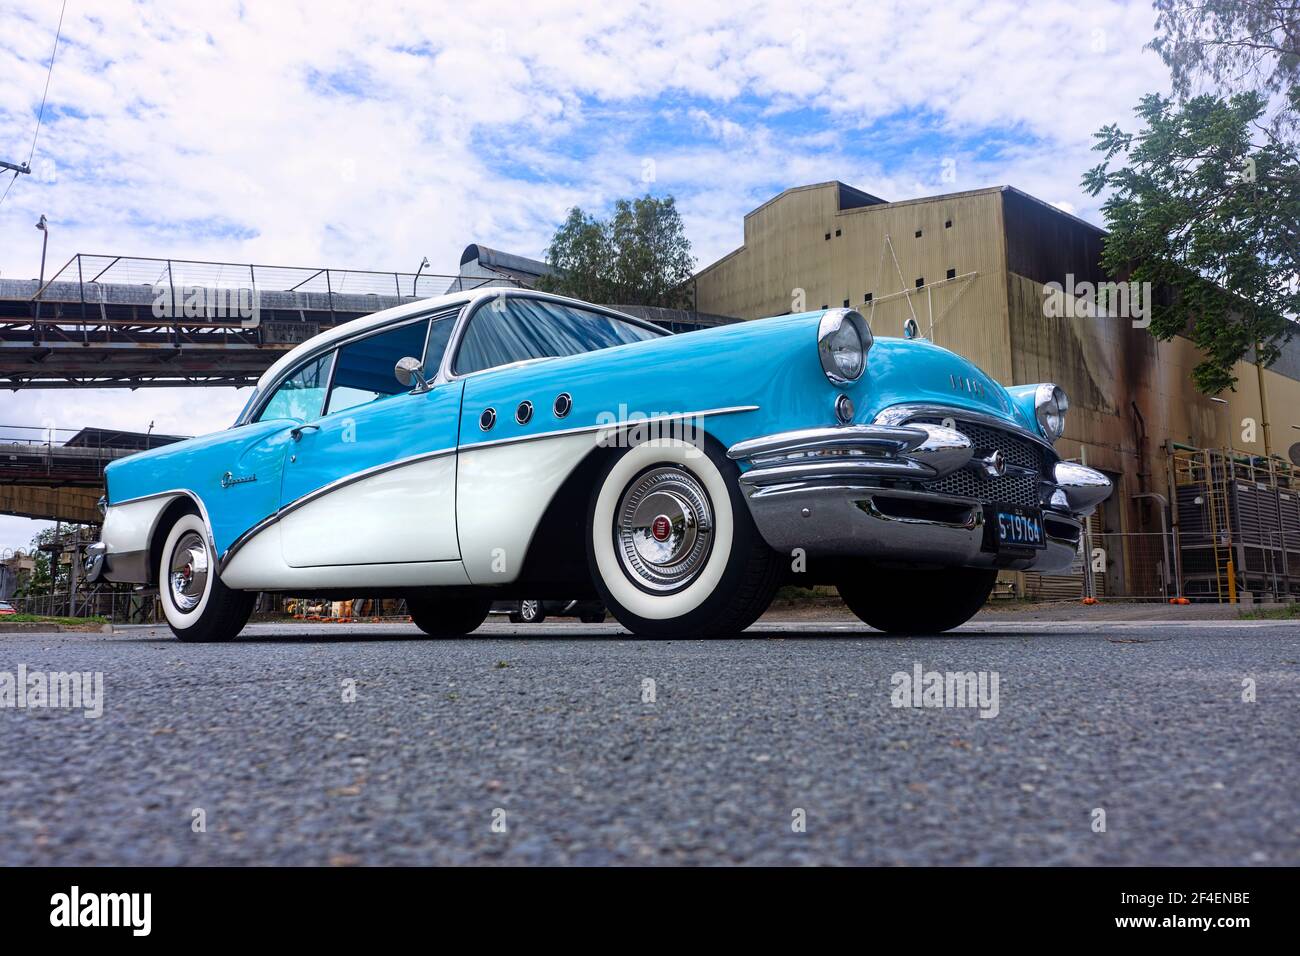 Ein tiefer Blick auf eine restaurierte klassische amerikanische Buick-Limousine aus dem Jahr 1955 in Blau und Weiß vor einem industriellen Mühlenhintergrund mit Kopierraum. Stockfoto